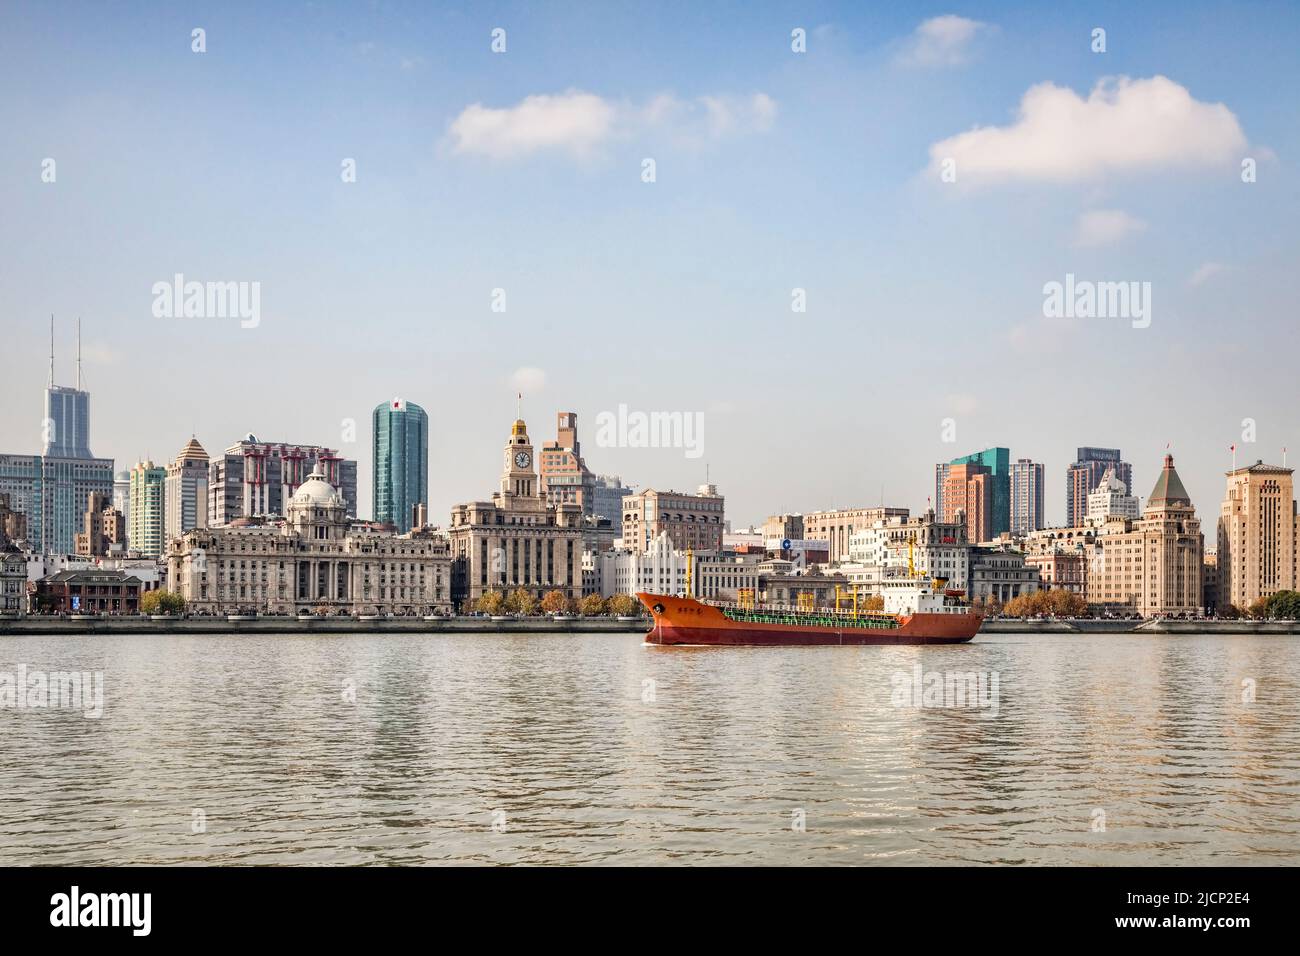 El 1 de diciembre de 2018: Shanghai, China - Buque de carga en el Río Huangpu pasando el Bund, la histórica zona de negocios de Shanghai. Foto de stock